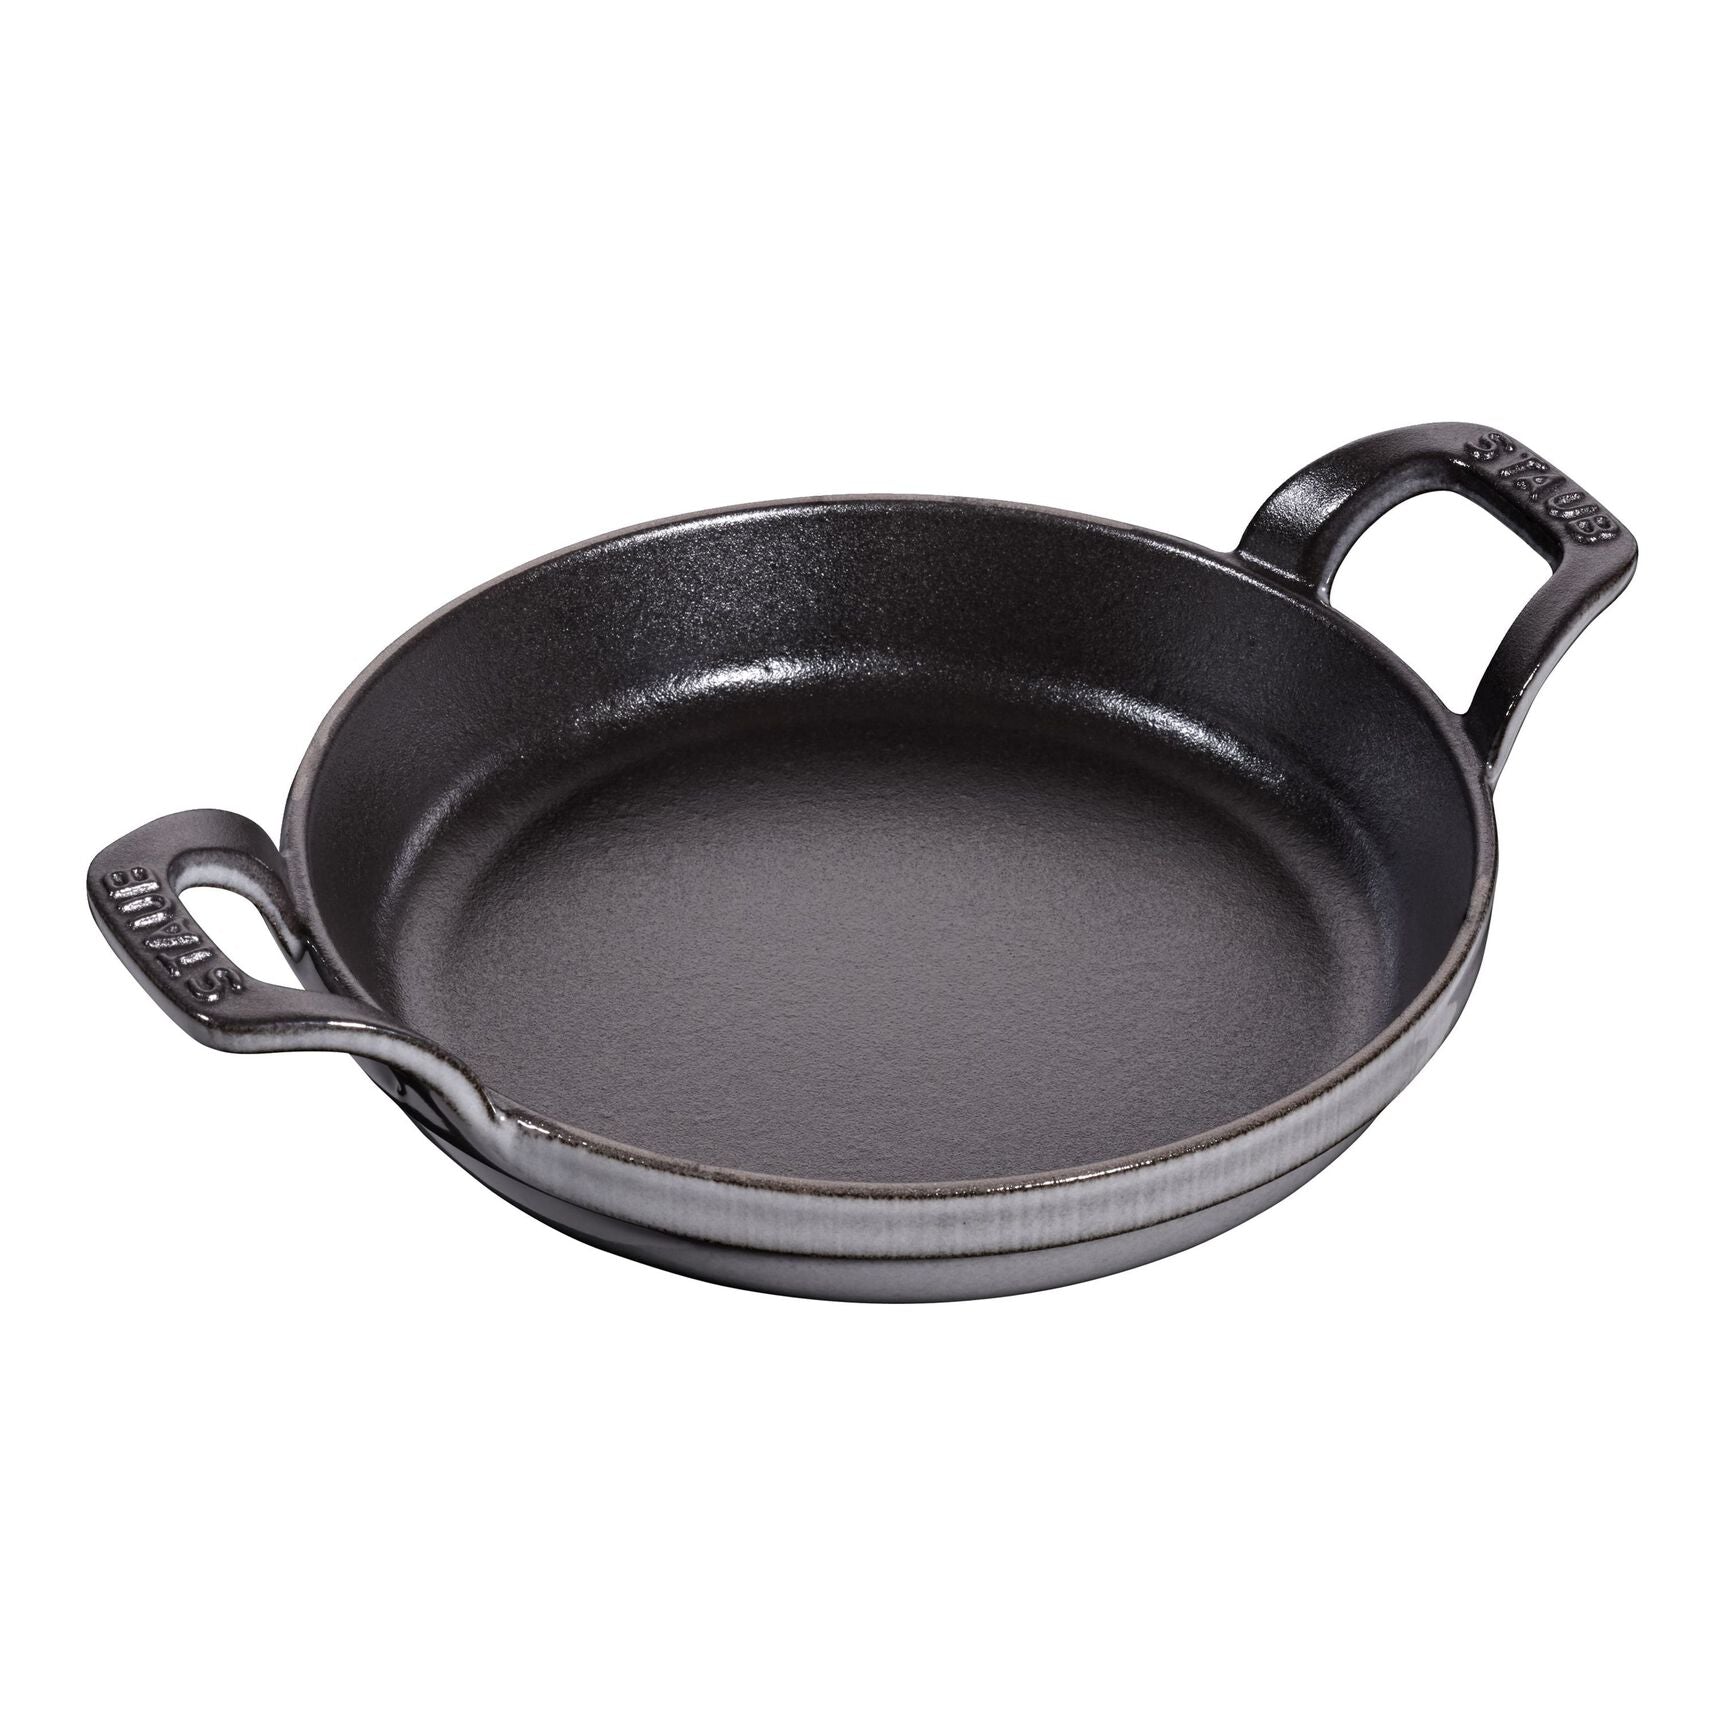 Baking dish Staub round 16 cm, Graphite grey 40509-552-0